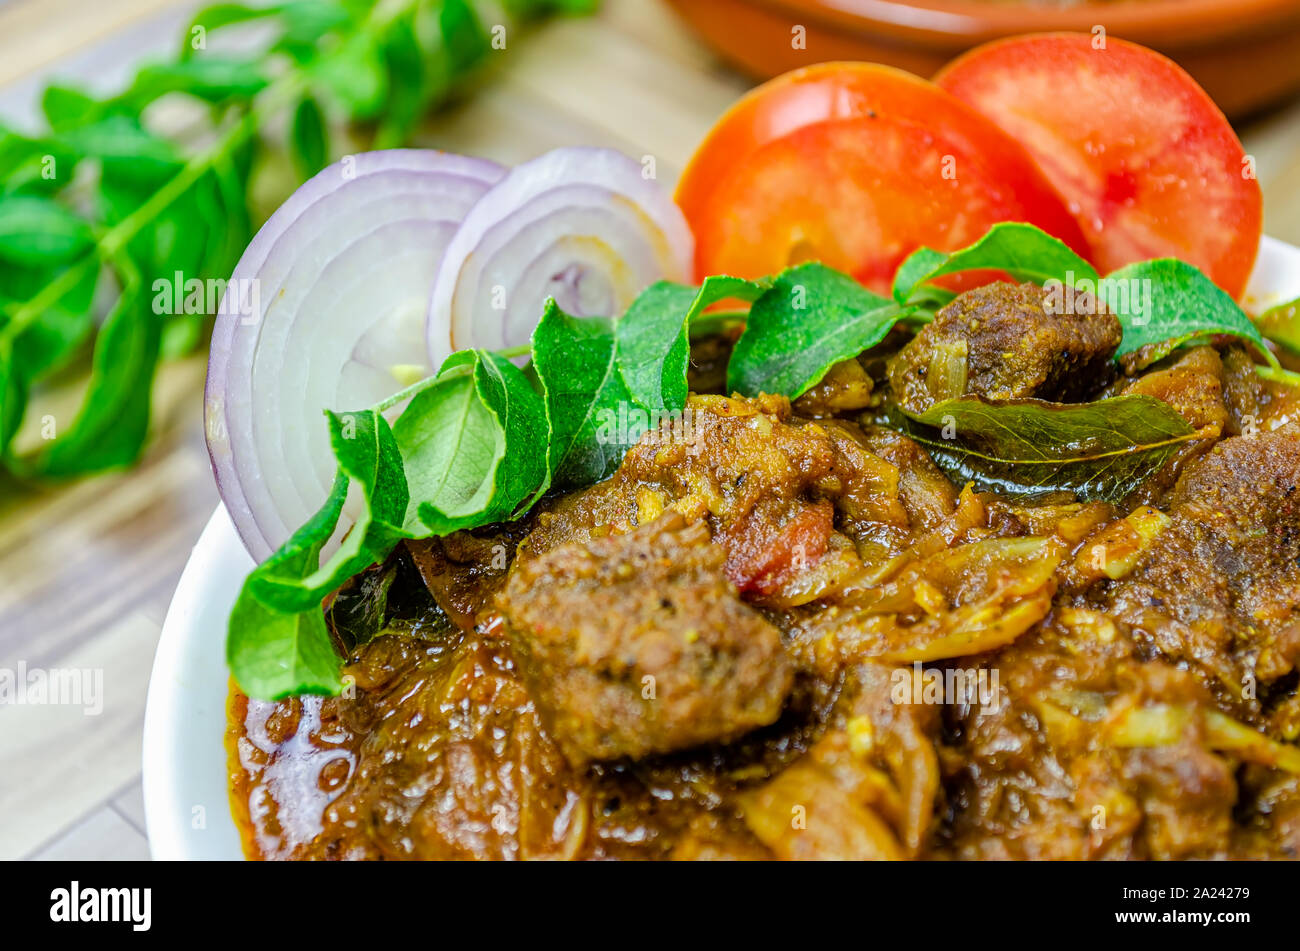 Nahaufnahme von Spicy Beef curry mit Zwiebeln garniert, Curry Blätter & Tomate. Traditionelle South Indian (Kerala) Küche. Stockfoto